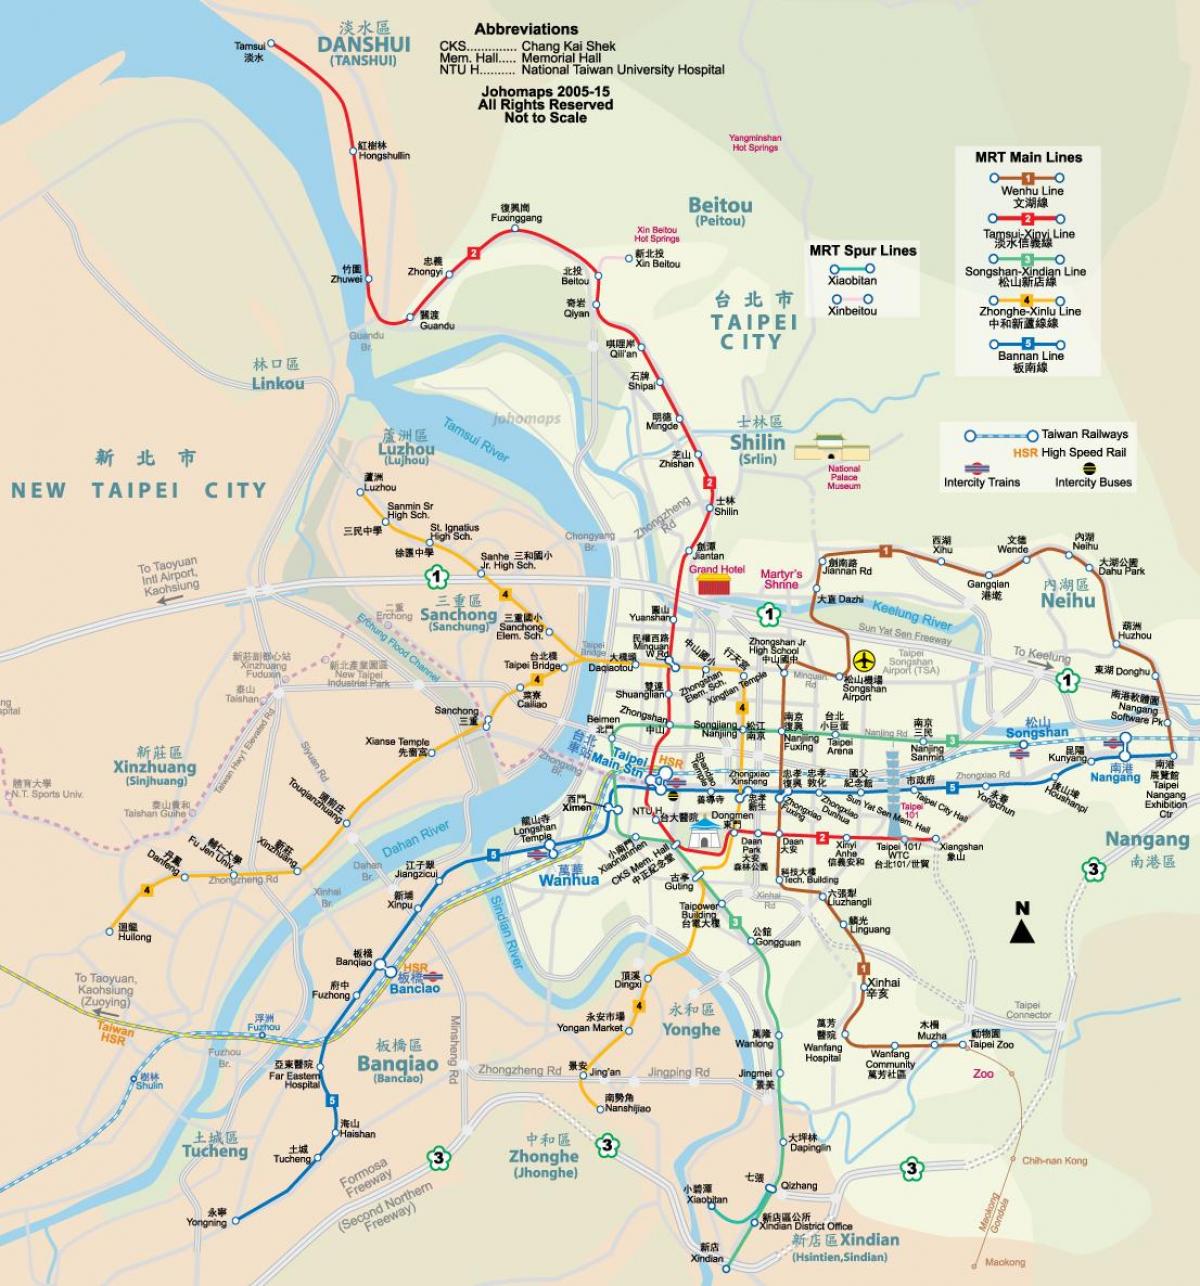 تائی پے شہر کے نقشے